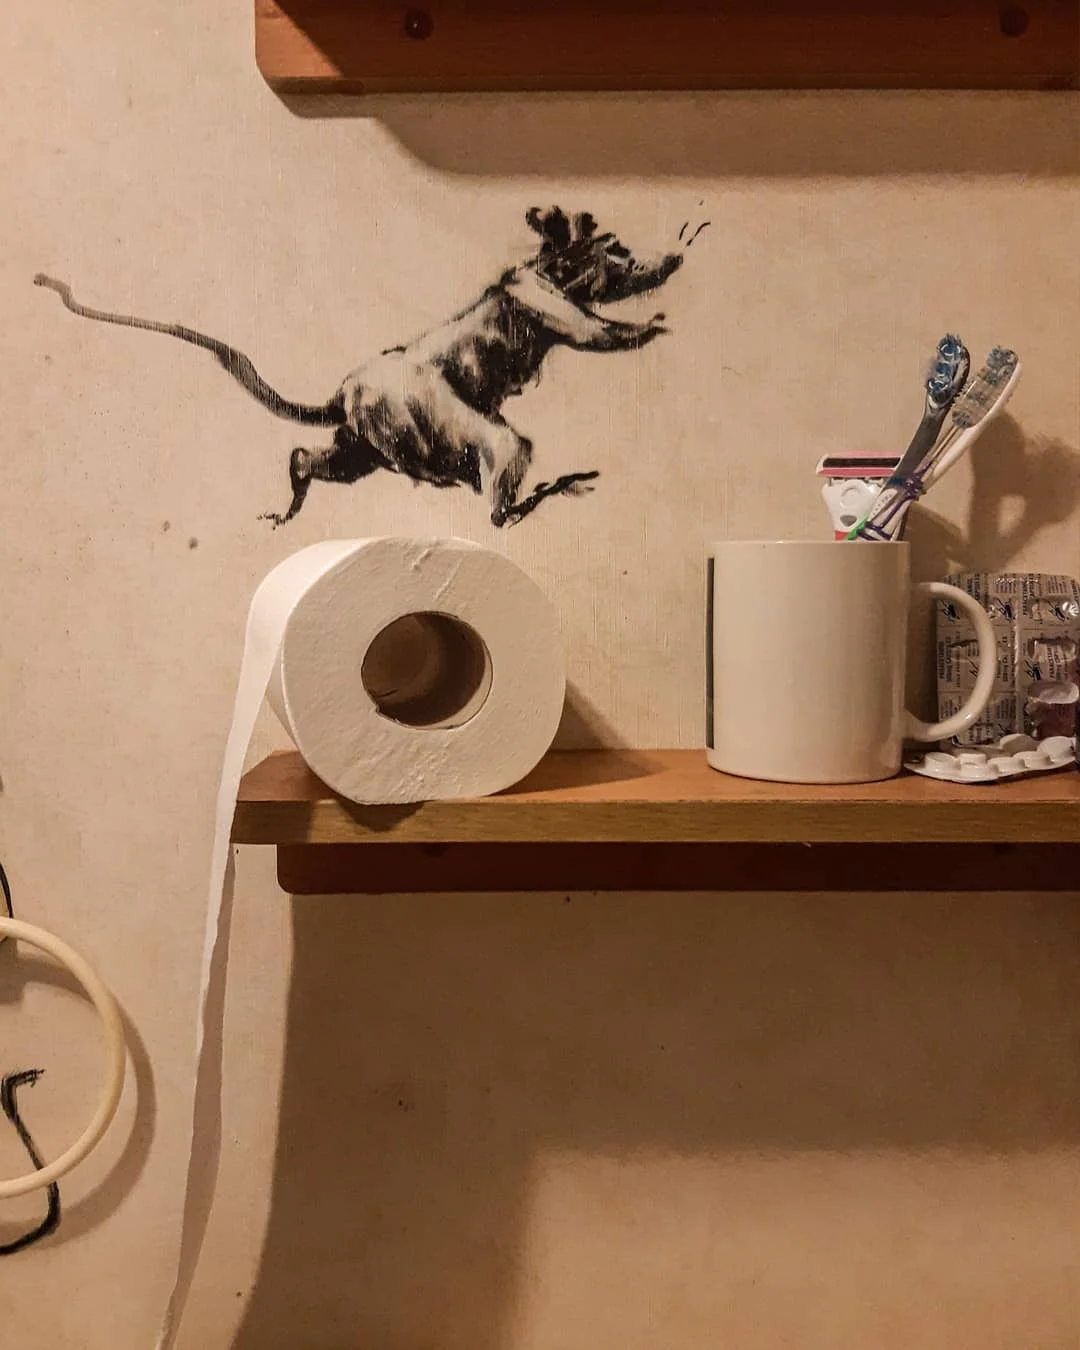 Бэнкси создал новую трешовую инсталляцию в собственном туалете - фото 475363